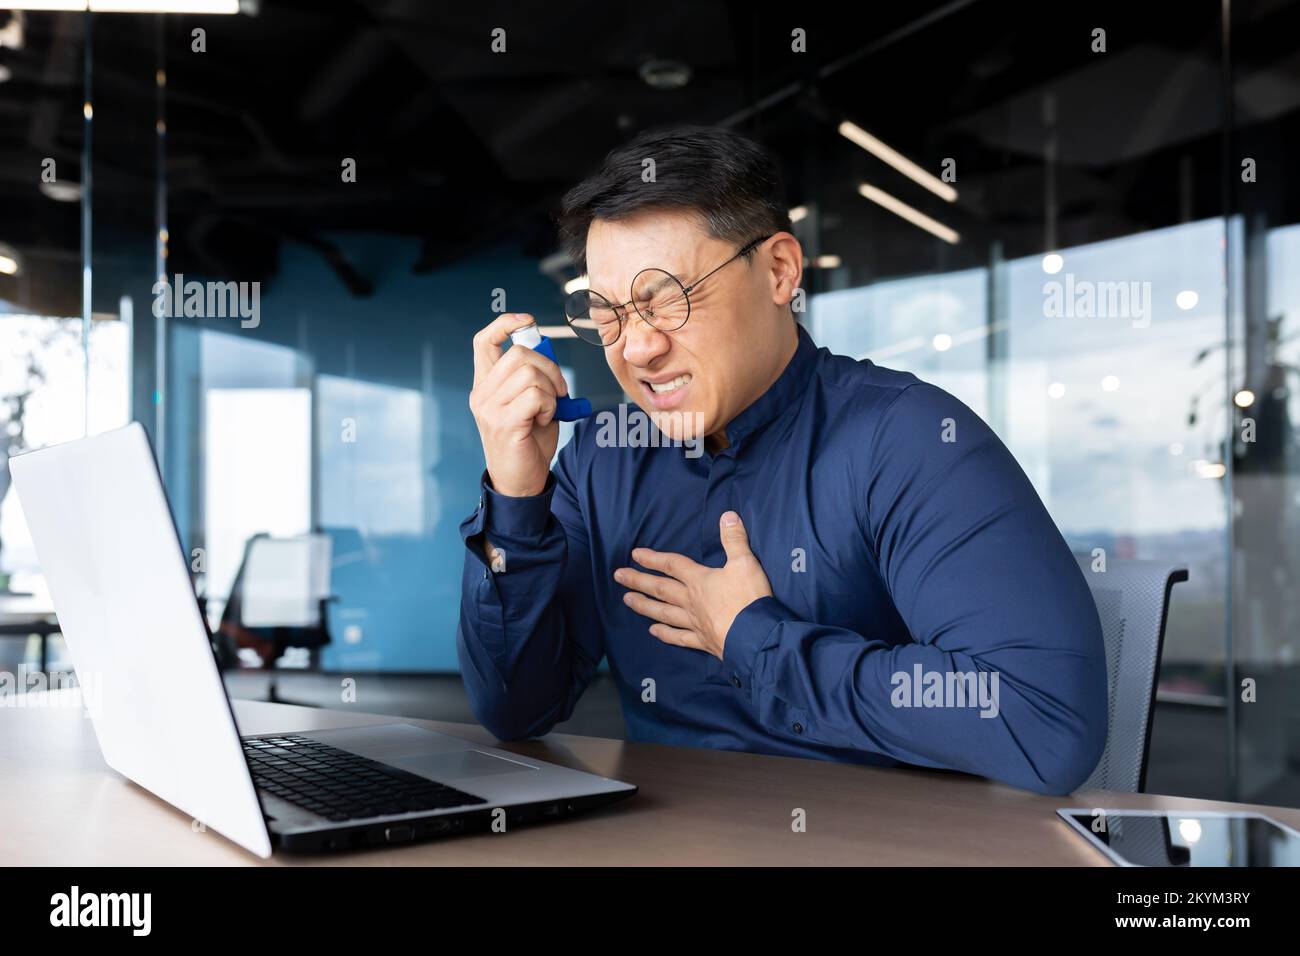 Asthmaanfall bei der Arbeit, asiatischer Geschäftsmann mit Atembeschwerden, Mann mit Inhalator und Medikamenten zur Erleichterung der Atmung, Mitarbeiter im Büro mit Laptop bei der Arbeit. Stockfoto